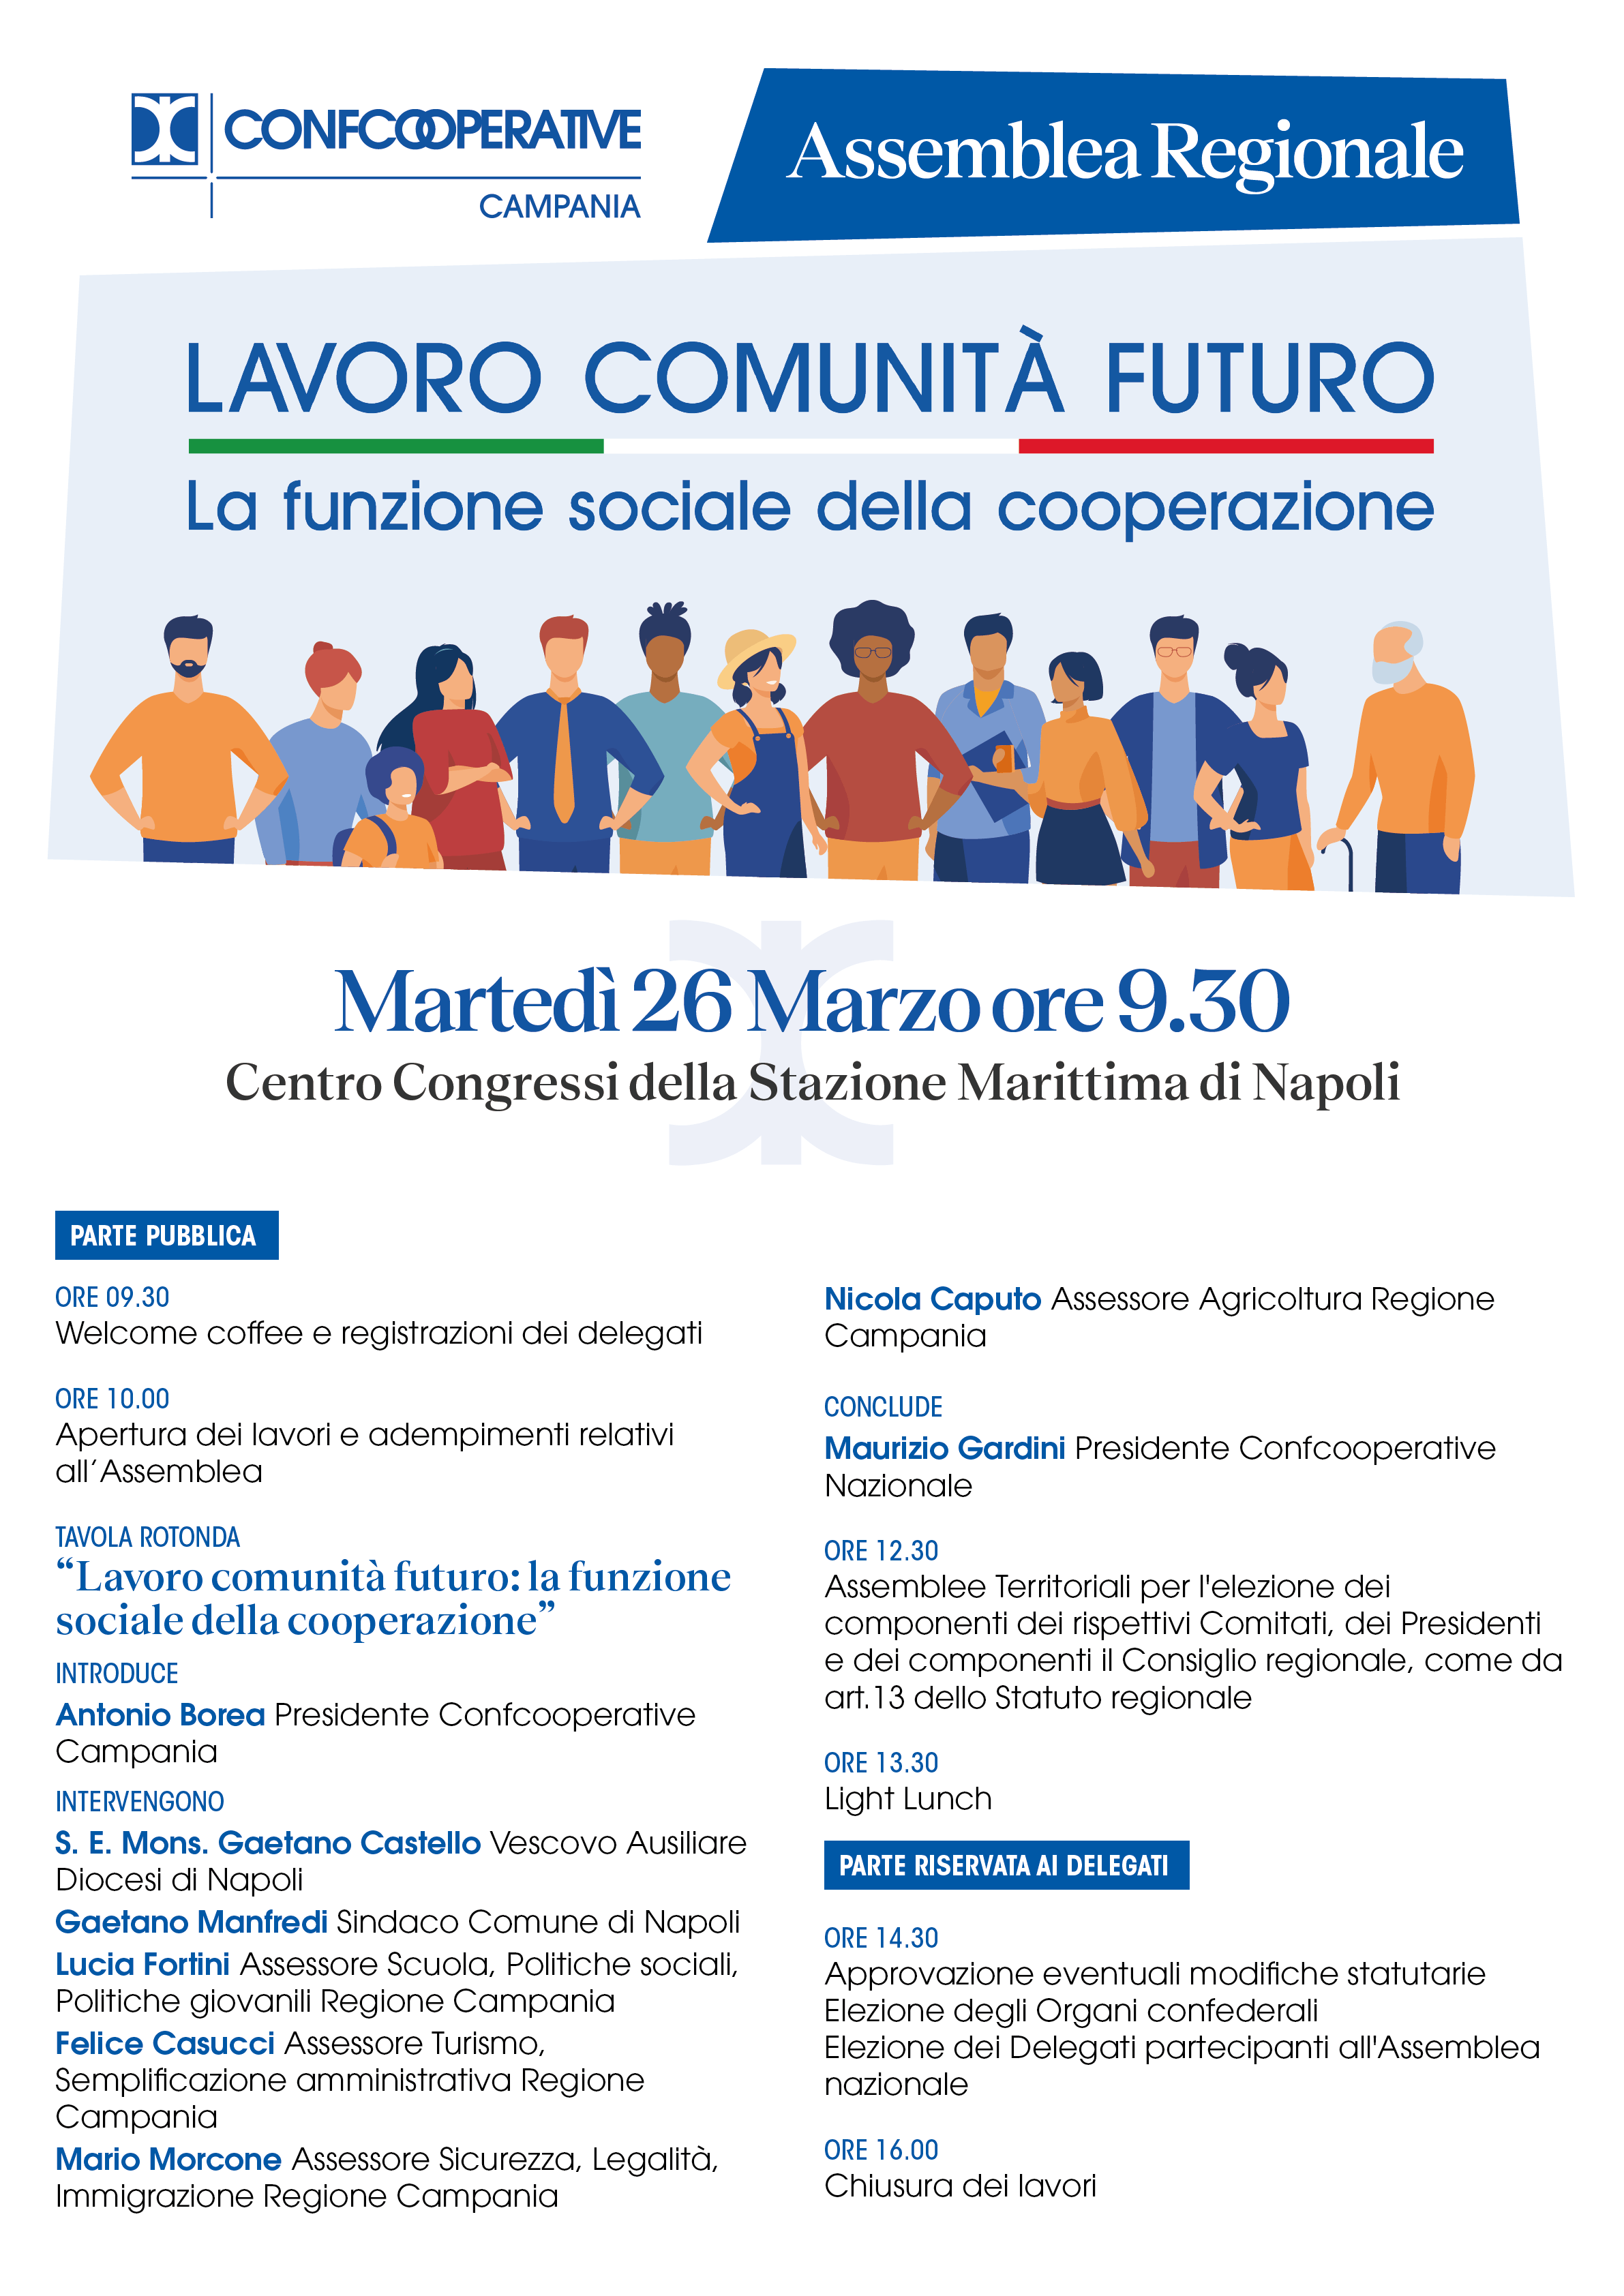 Assemblea di Confcooperative Campania, per il rinnovo delle cariche sociali.